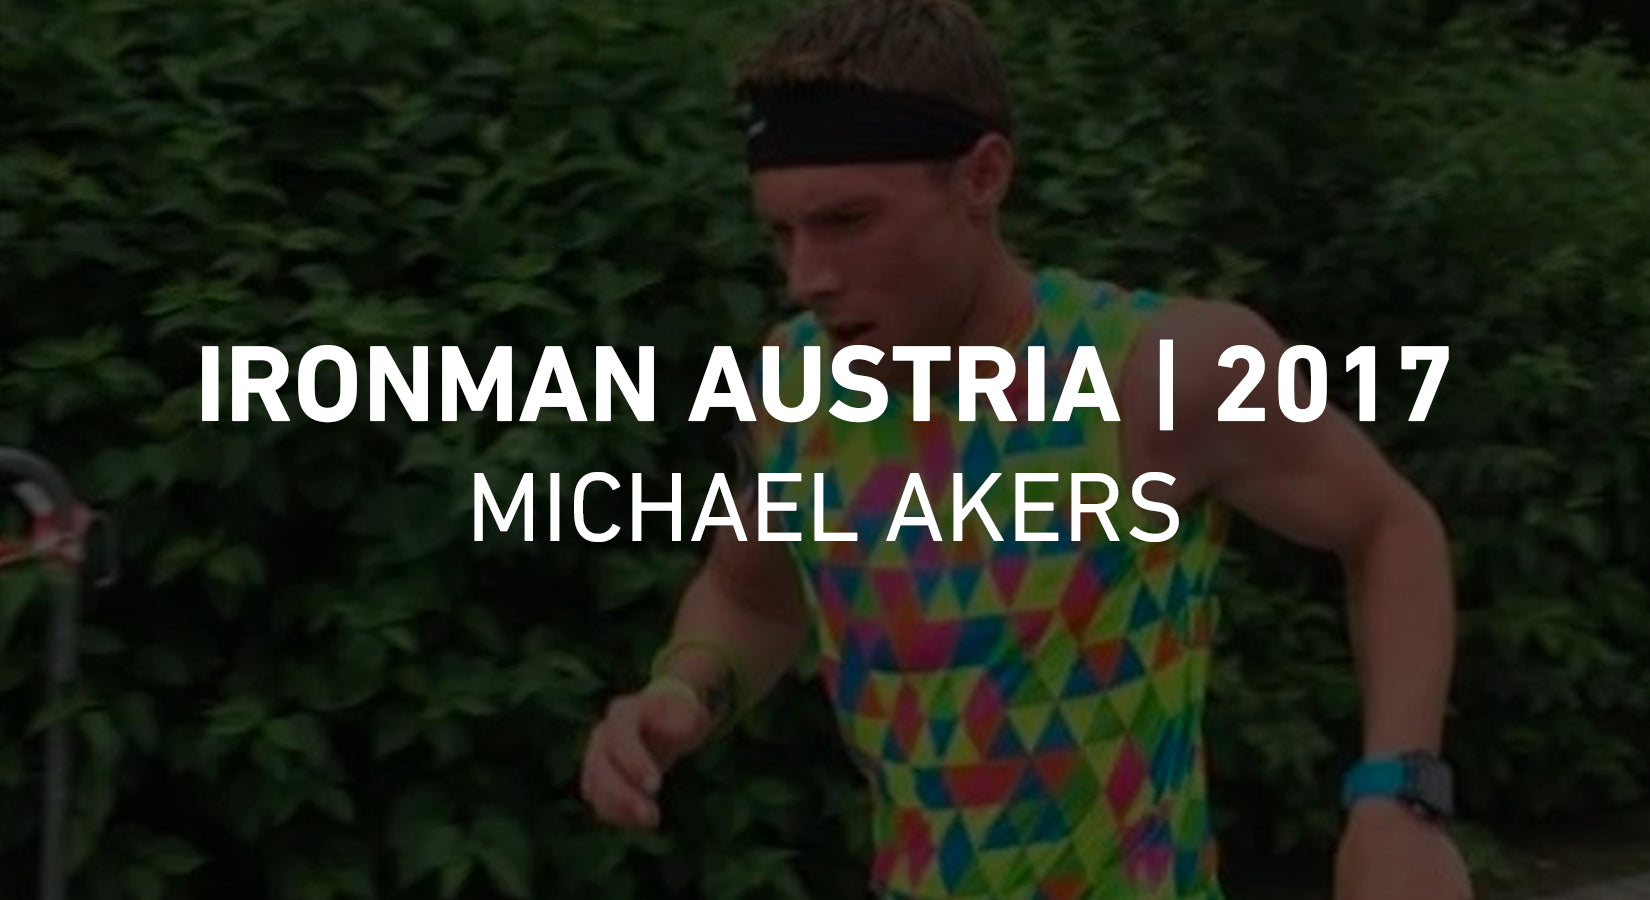 RONMAN Austria - Michael Akers - 2017